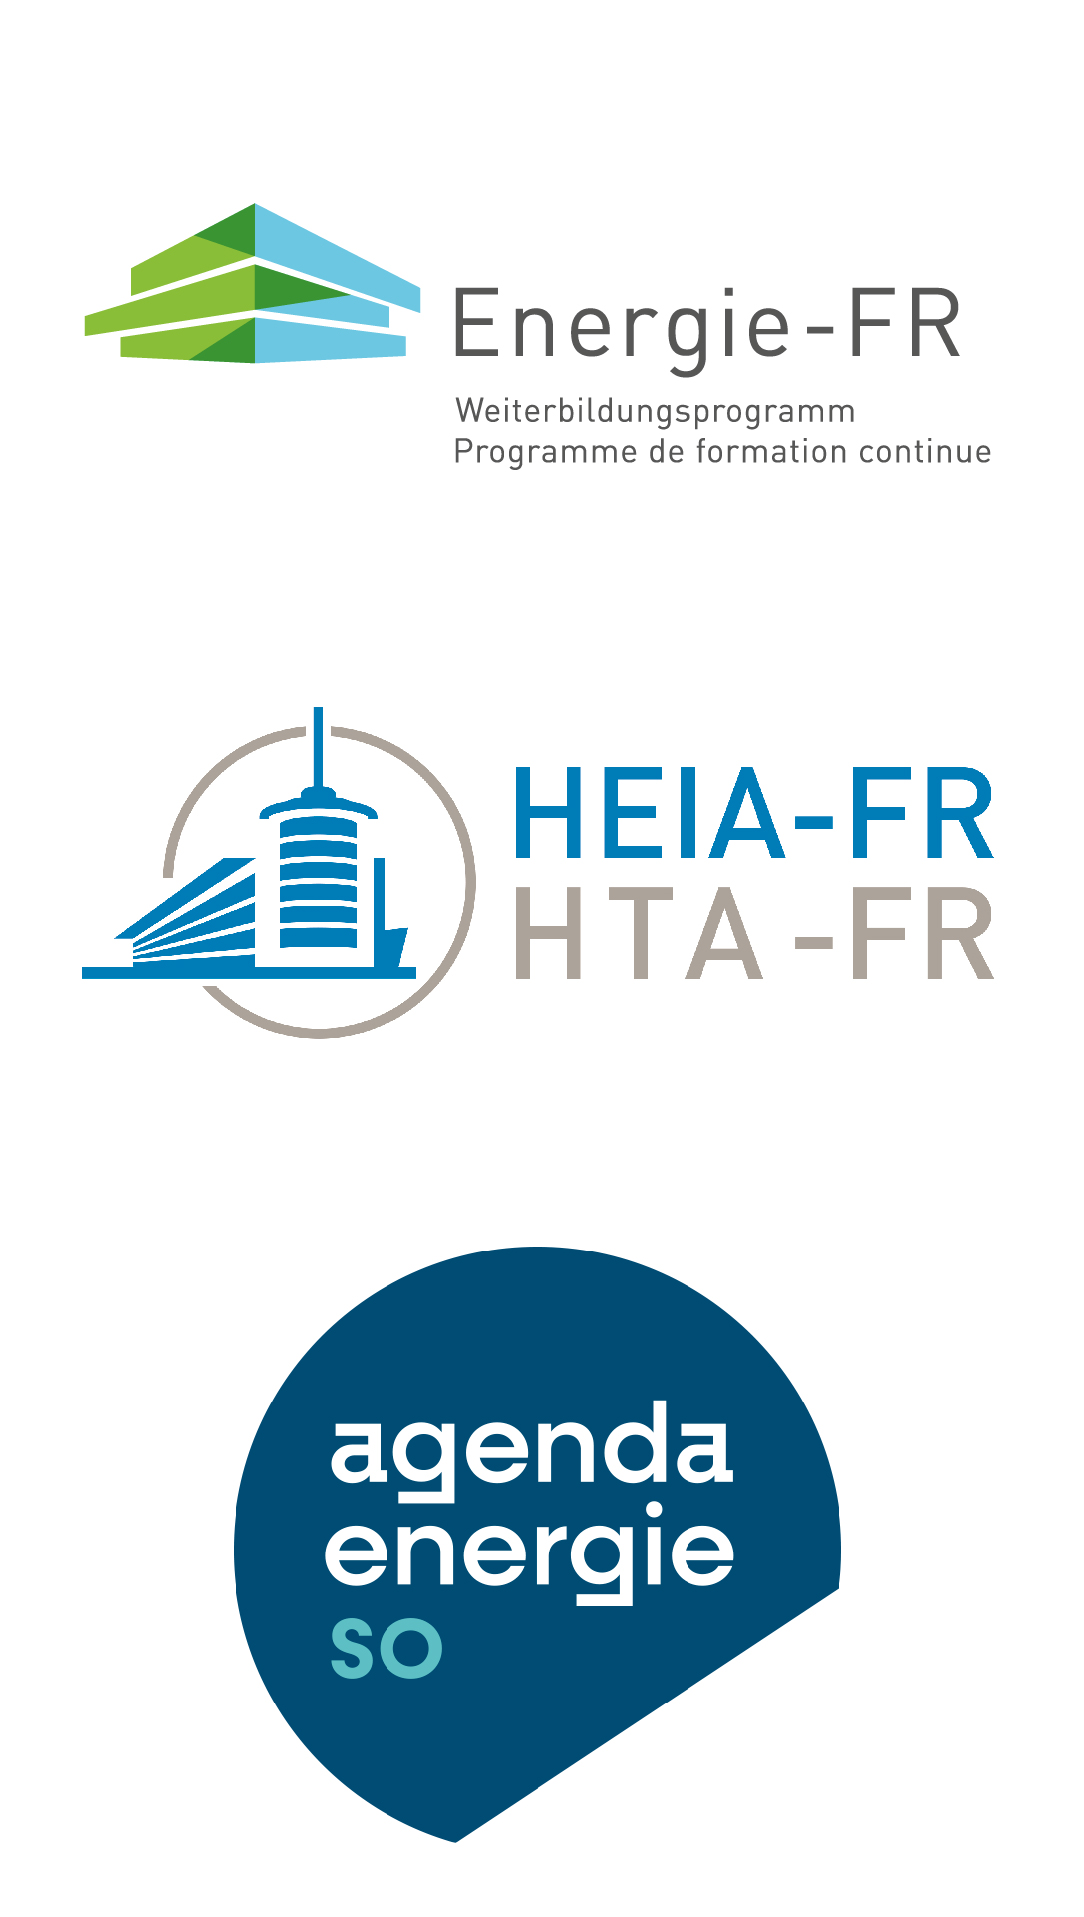 logo energie FR - agenda SO - heia